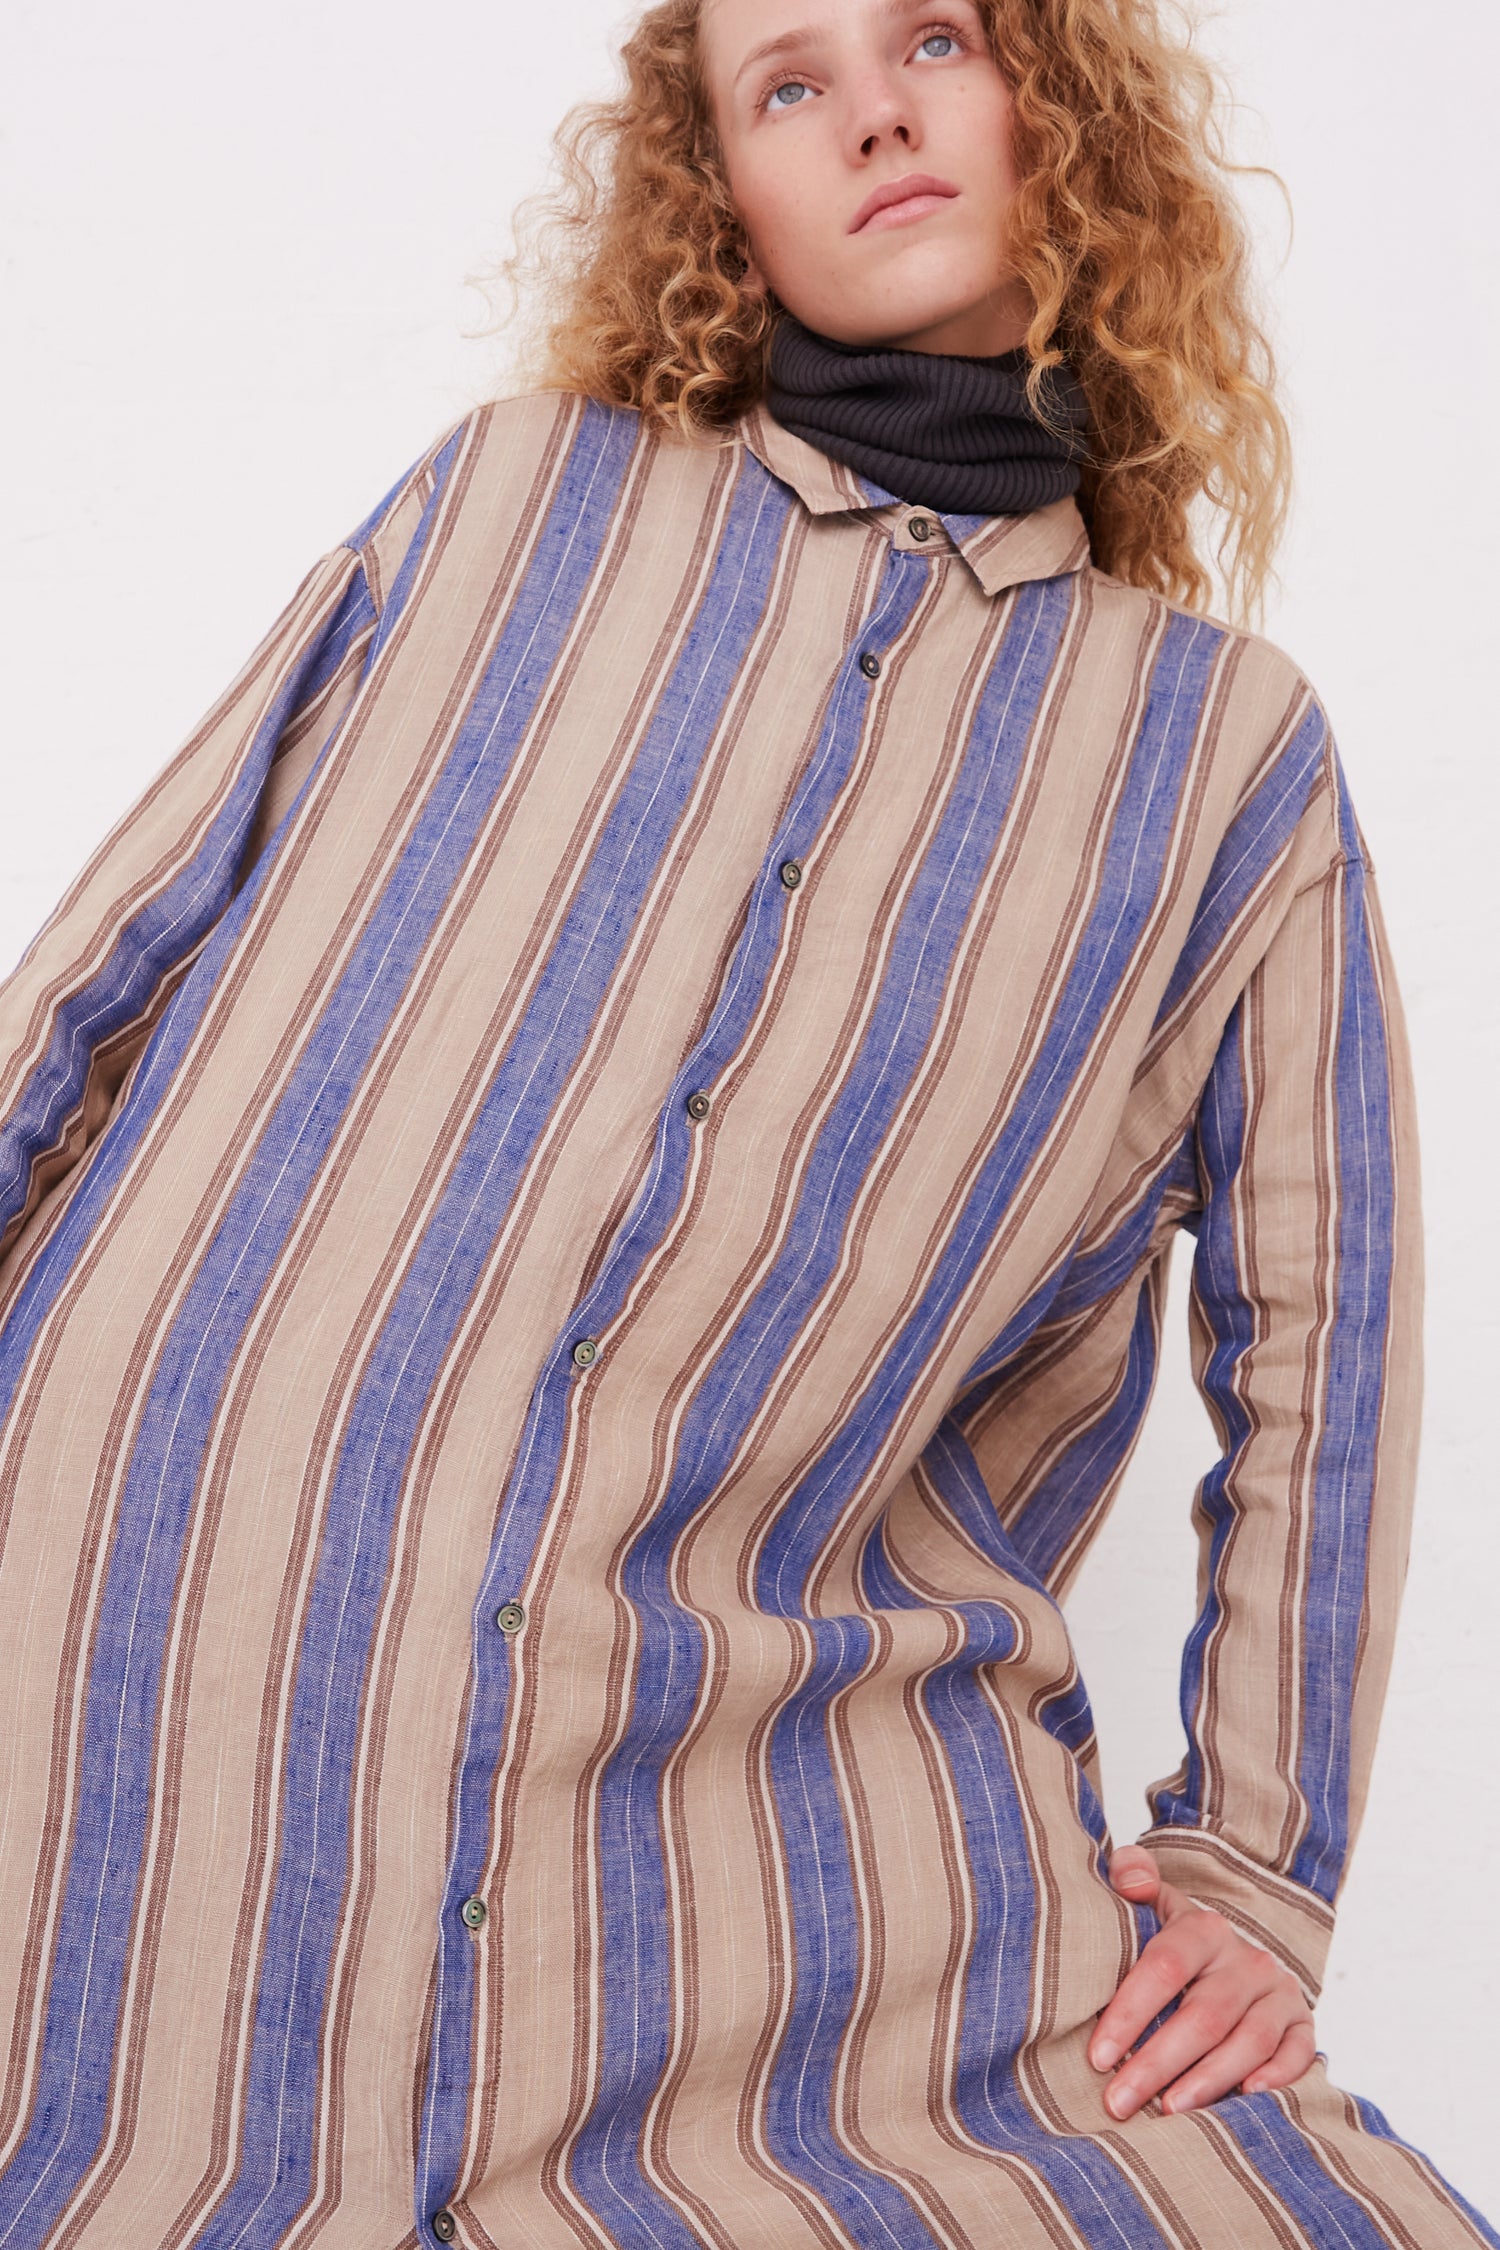 The model is wearing a long sleeve Ichi Antiquités Linen Stripe Dress in Blue.